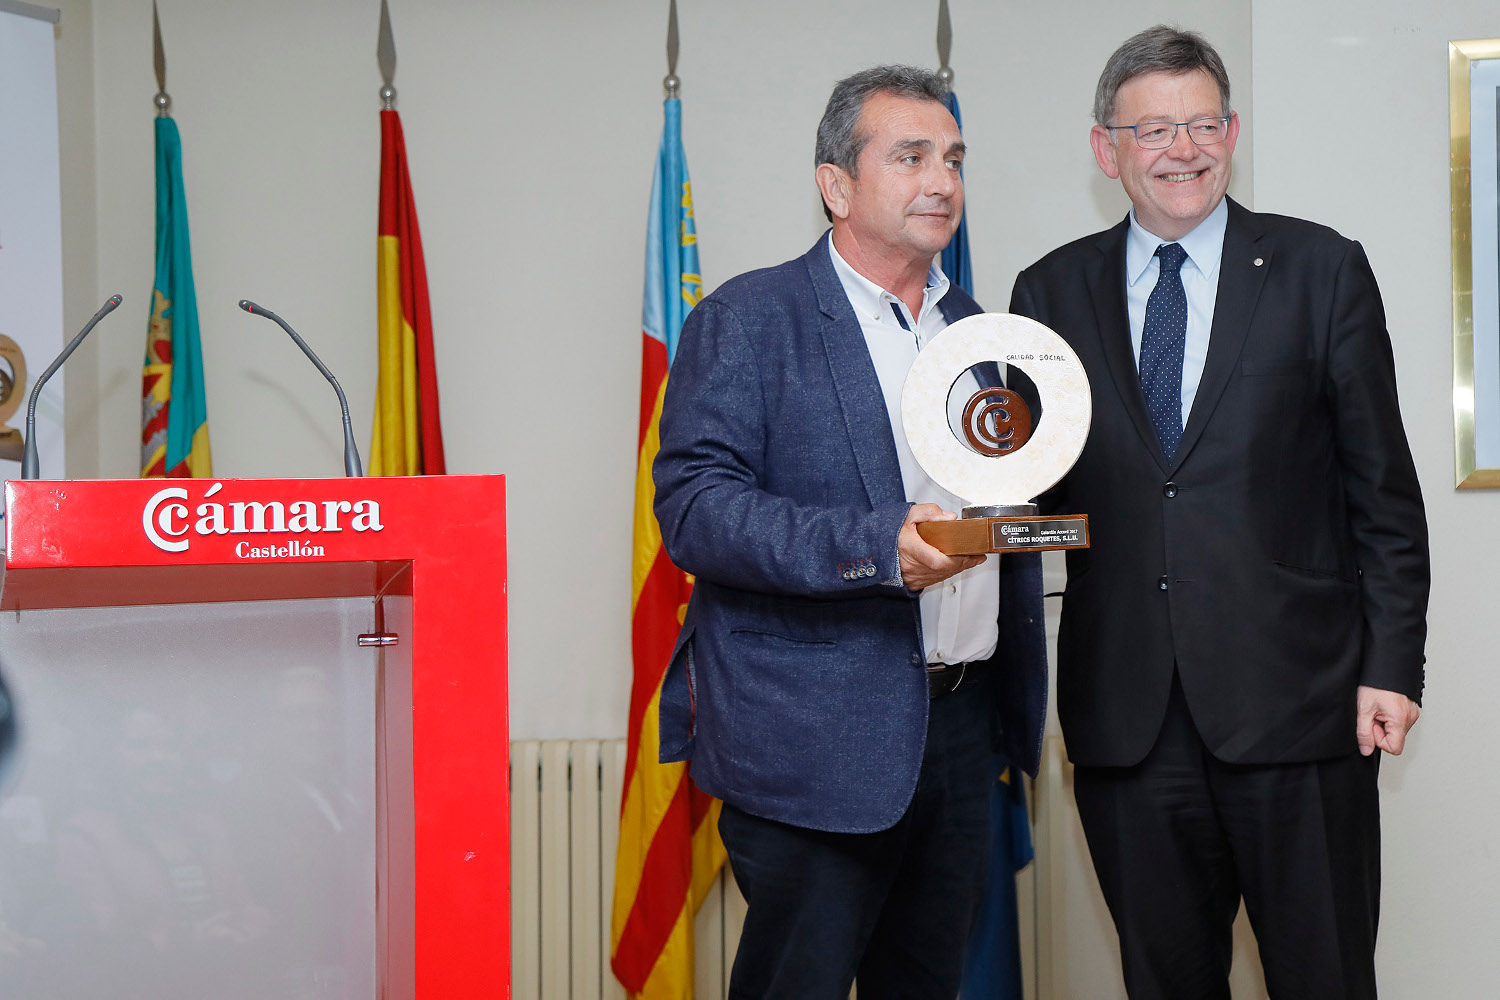 Cítrics Roquetes, miembro de la Red Nodus, recibe el galardón Accord a la Calidad Social de la Cámara de Comercio de Castellón 2018.